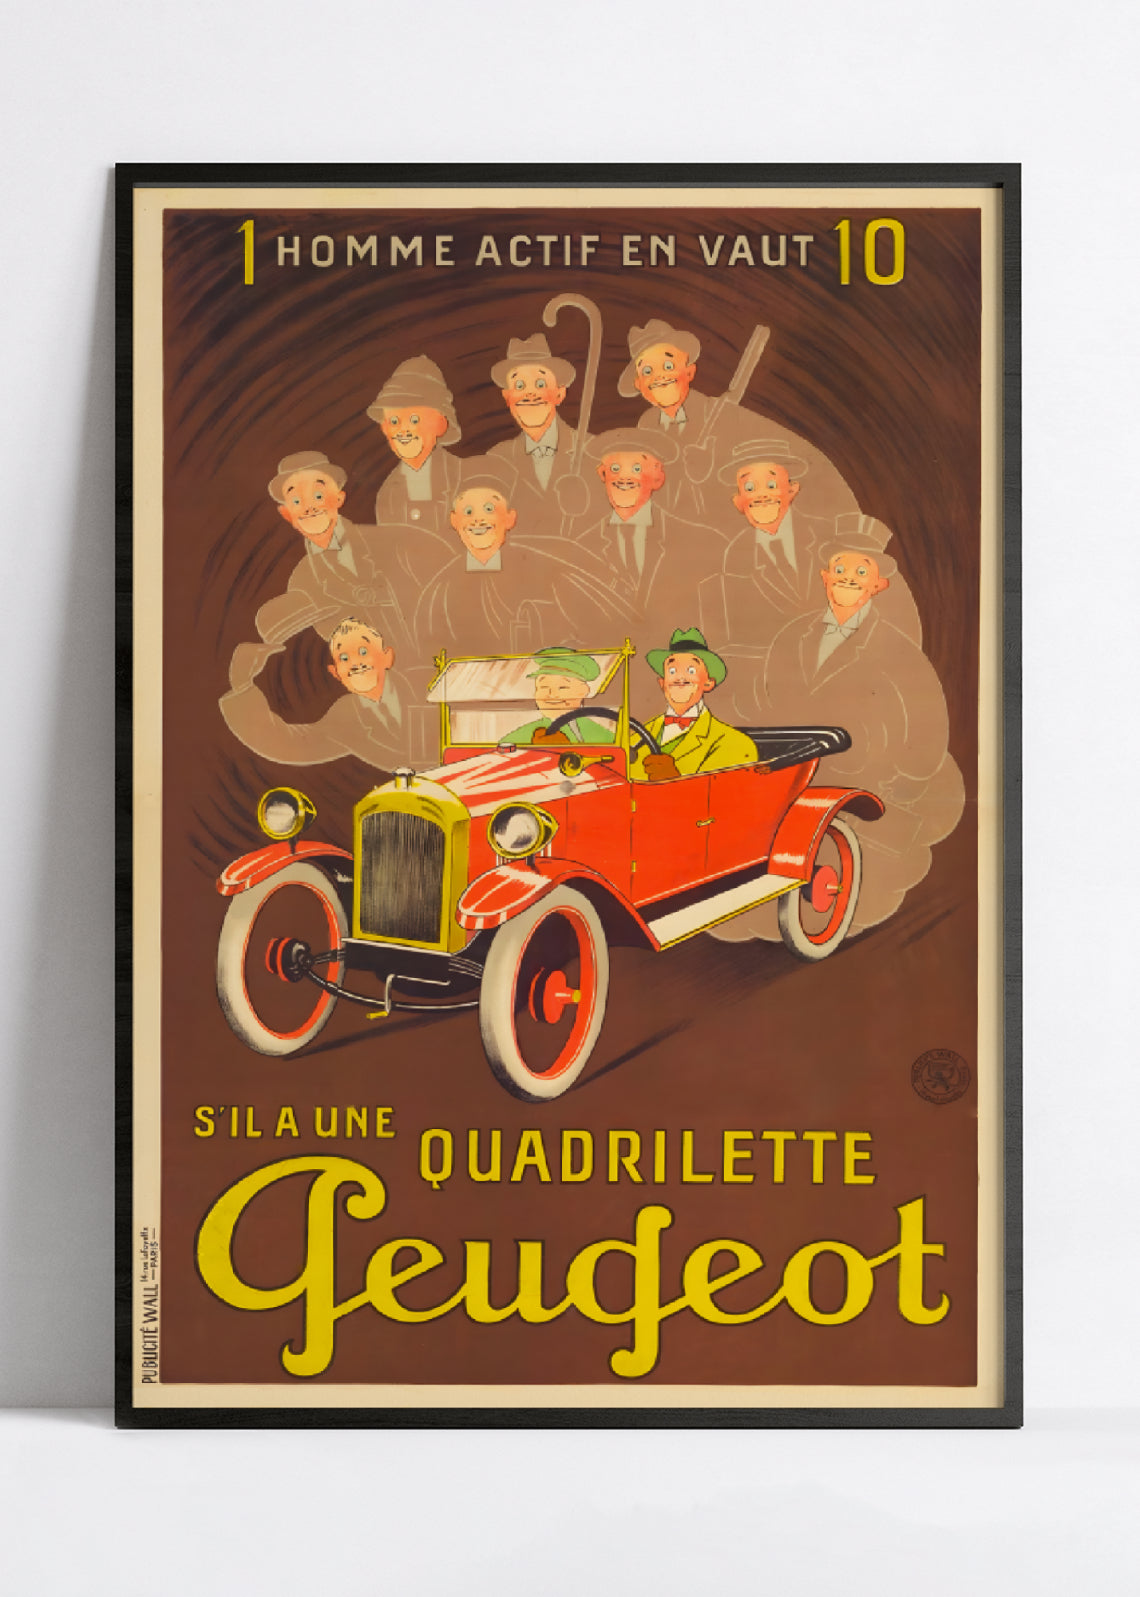 Affiche voiture vintage "Quadrillette Peugeot" - Mich - Haute Définition - papier mat 230gr/m²